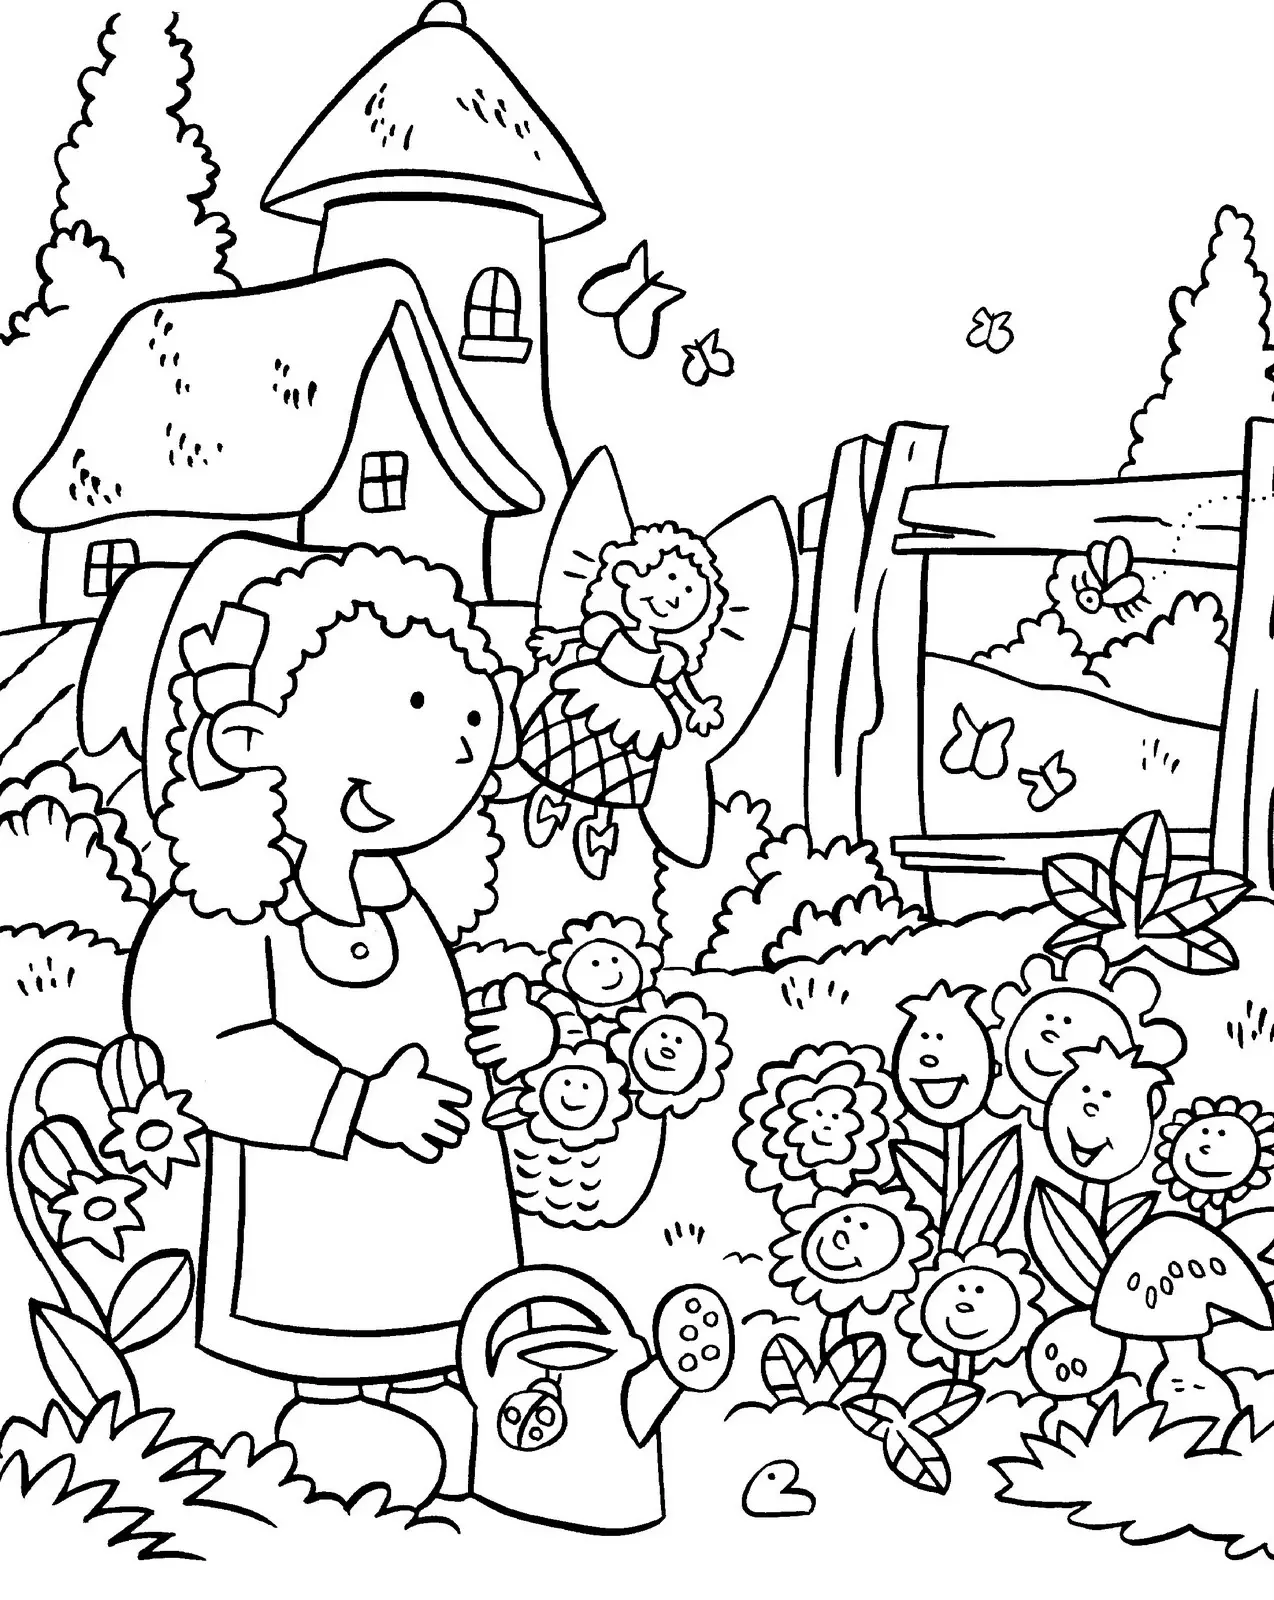 como dibujar un jardin